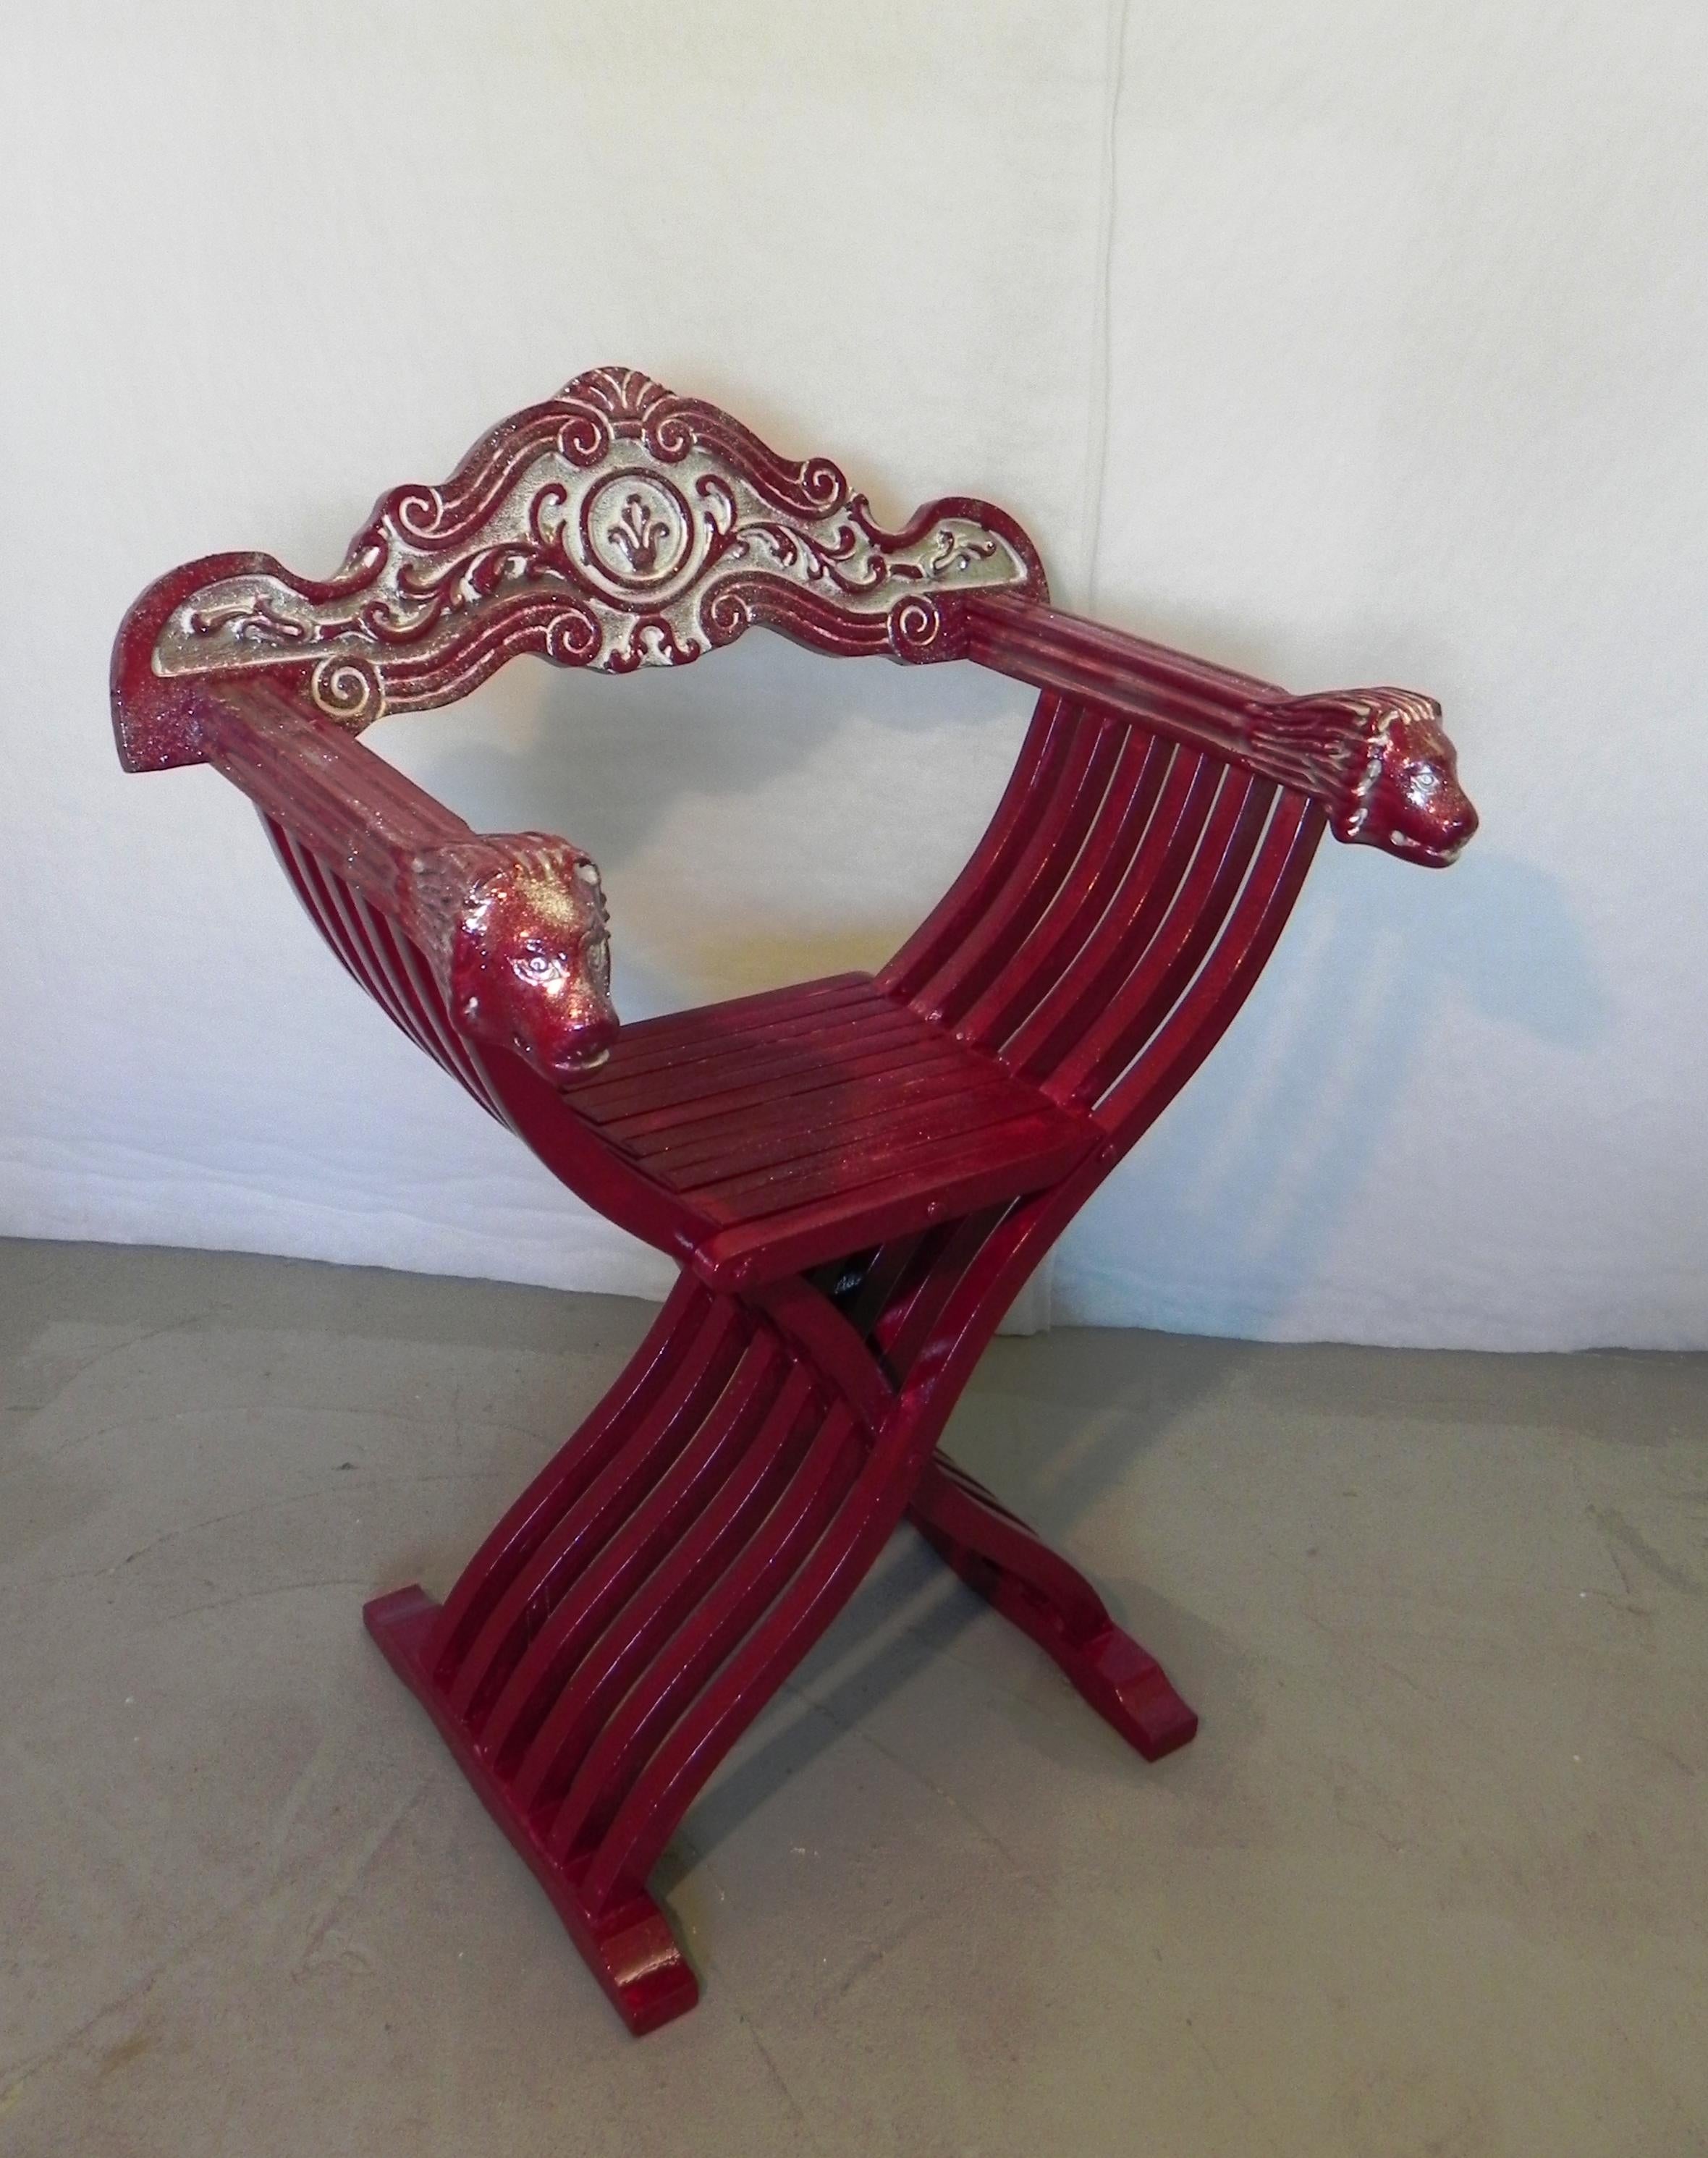 savonarola Red Throne chair. hergestellt in den 1960er Jahren im renaissancestil. armlehnen mit geschnitzten löwenköpfen. rückenlehne geschnitzt mit dekorativen renaissancemotiven. der stuhl war ursprünglich nussbaumfarben, wurde aber in den 1970er